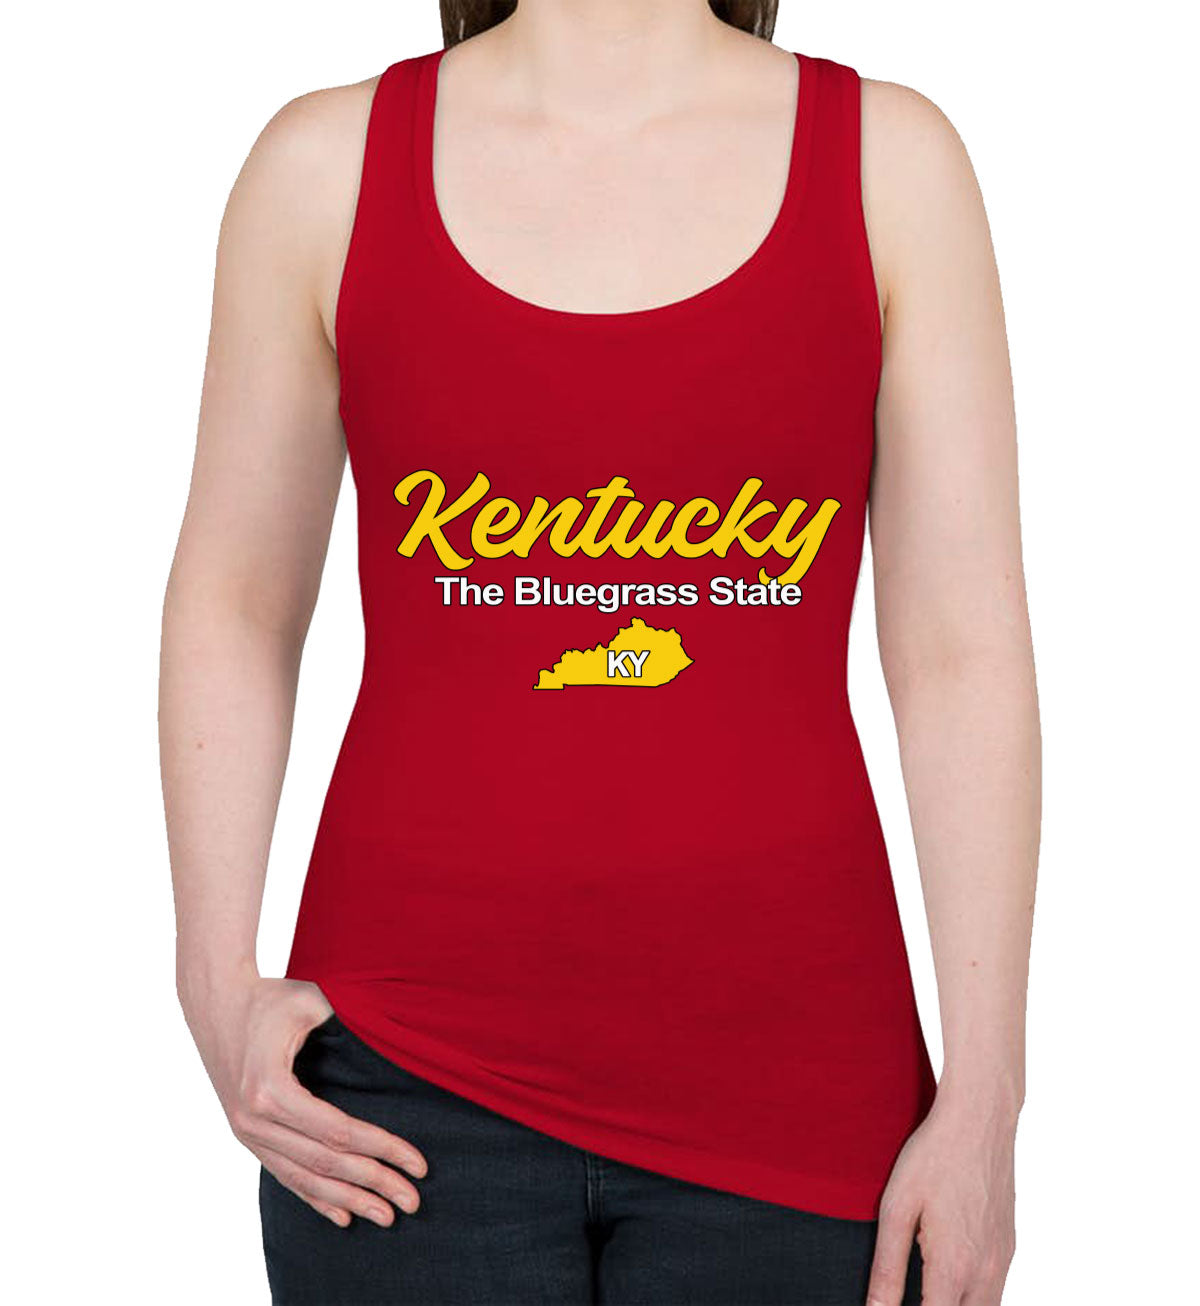 Kentucky The Bluegrass State Women's Racerback Tank Top